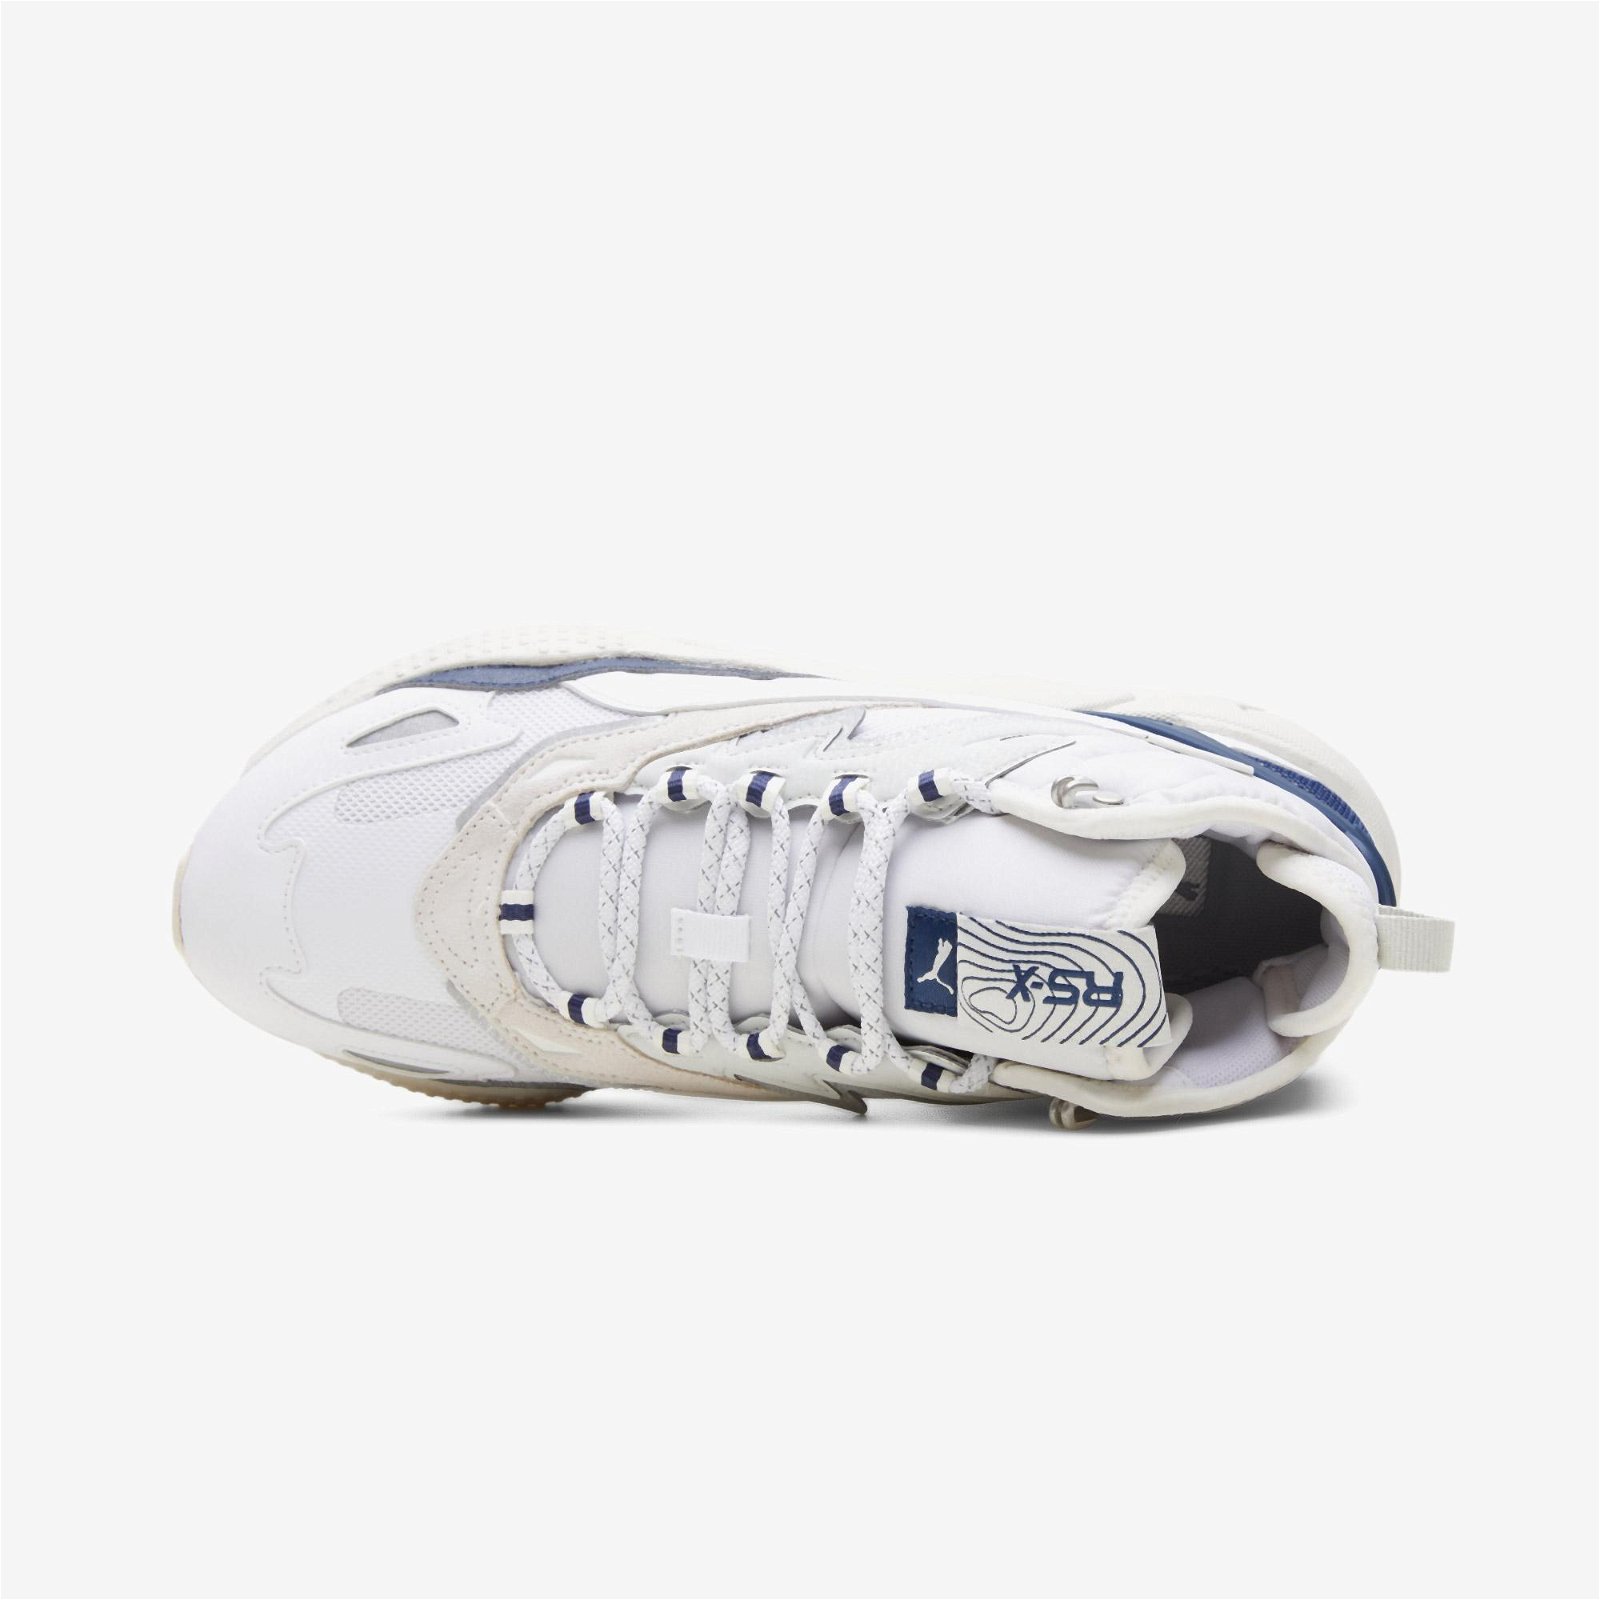 Puma RS-X Hi Unisex Beyaz Spor Ayakkabı